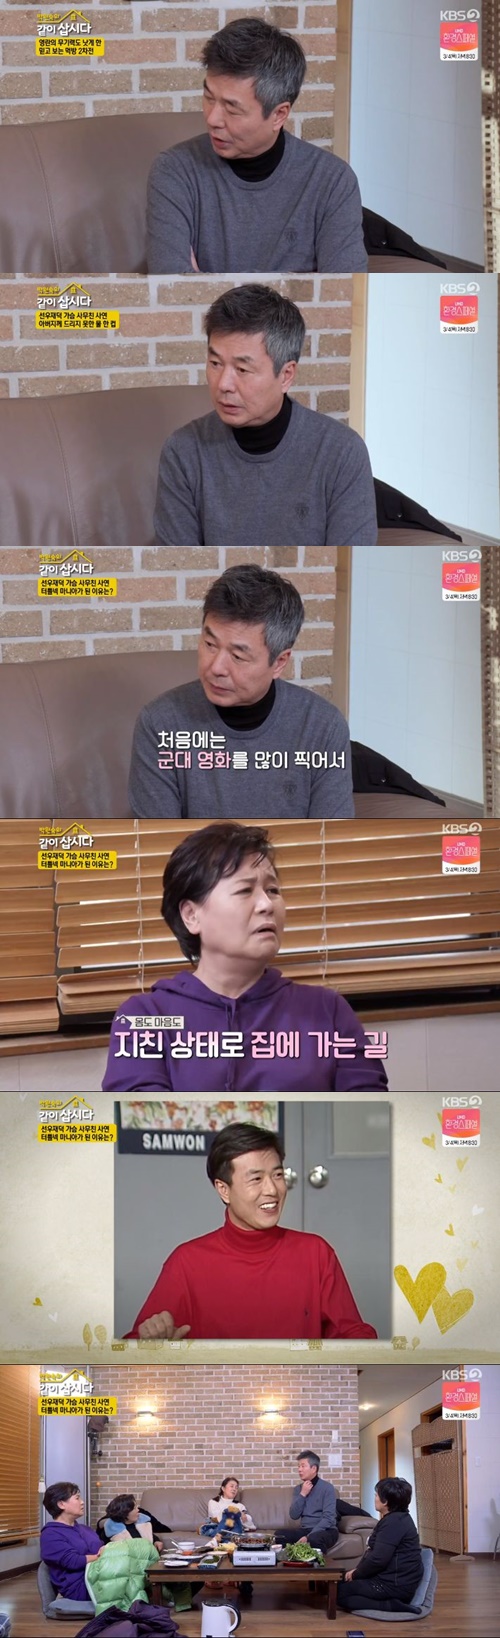 ‘같이 삽시다3’ 선우재덕 사진=KBS2 예능프로그램 ‘박원숙의 같이 삽시다’ 시즌3 캡처